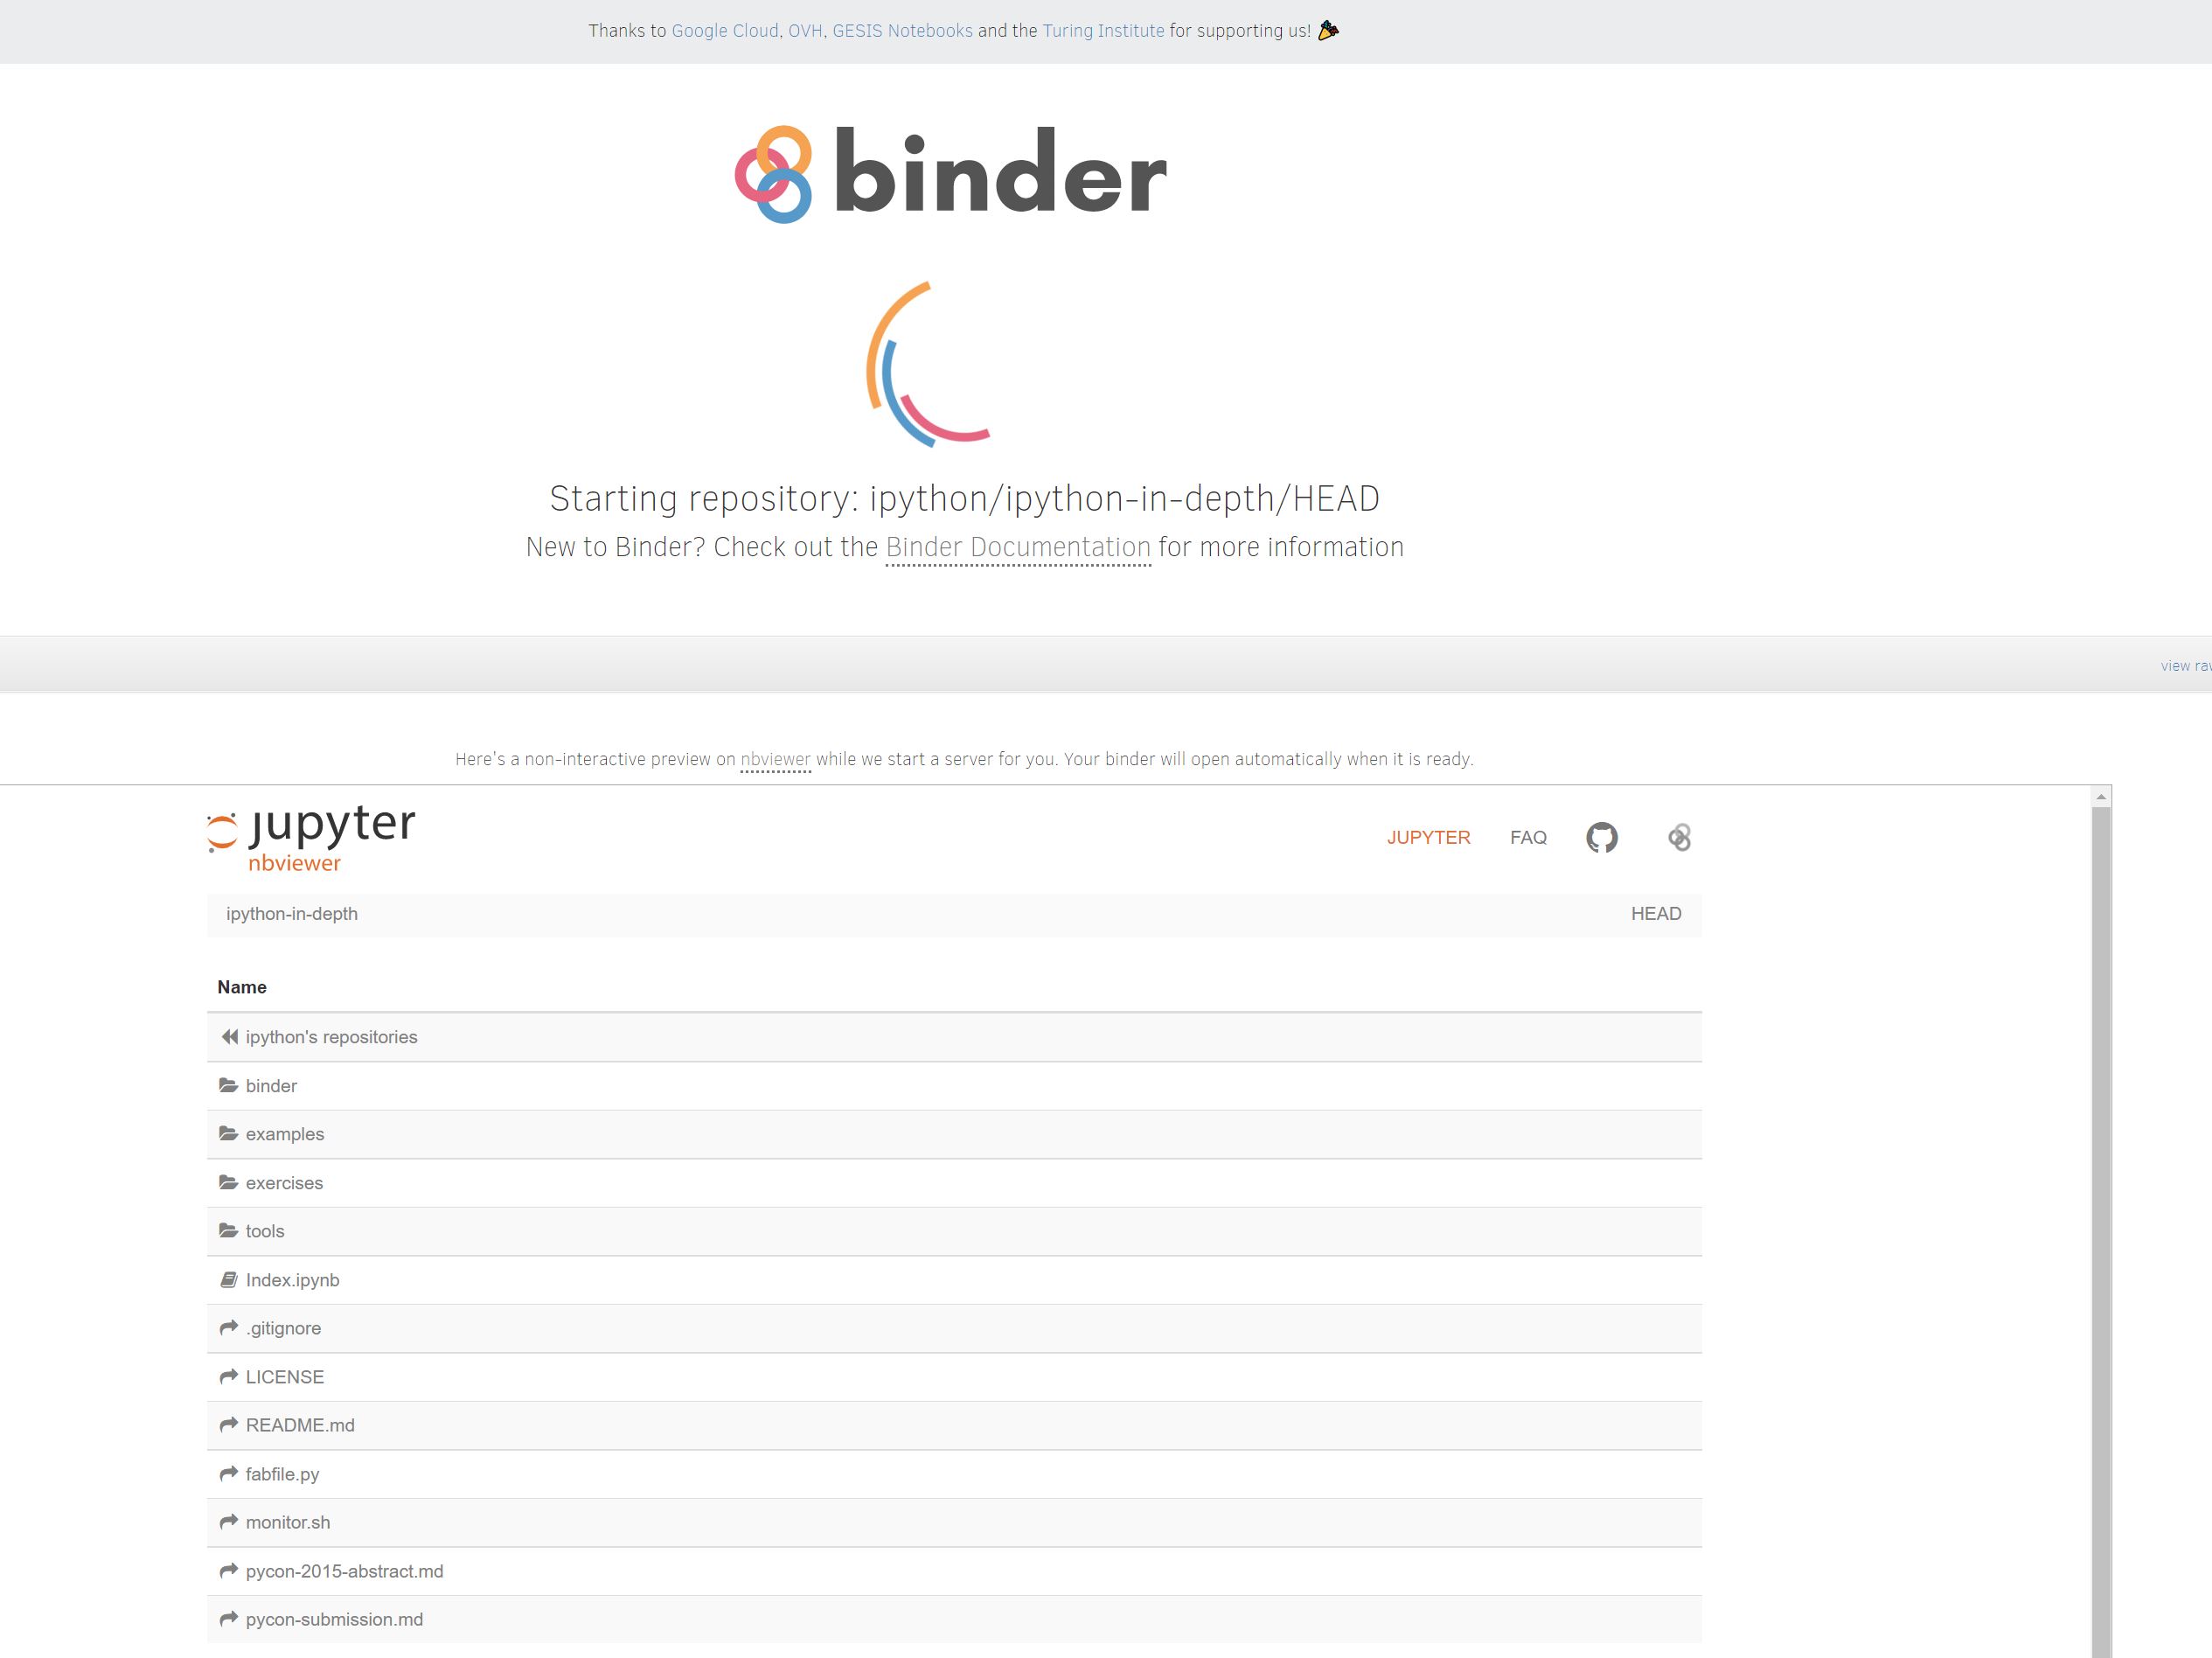 ../_images/jupyter_org_binder.JPG